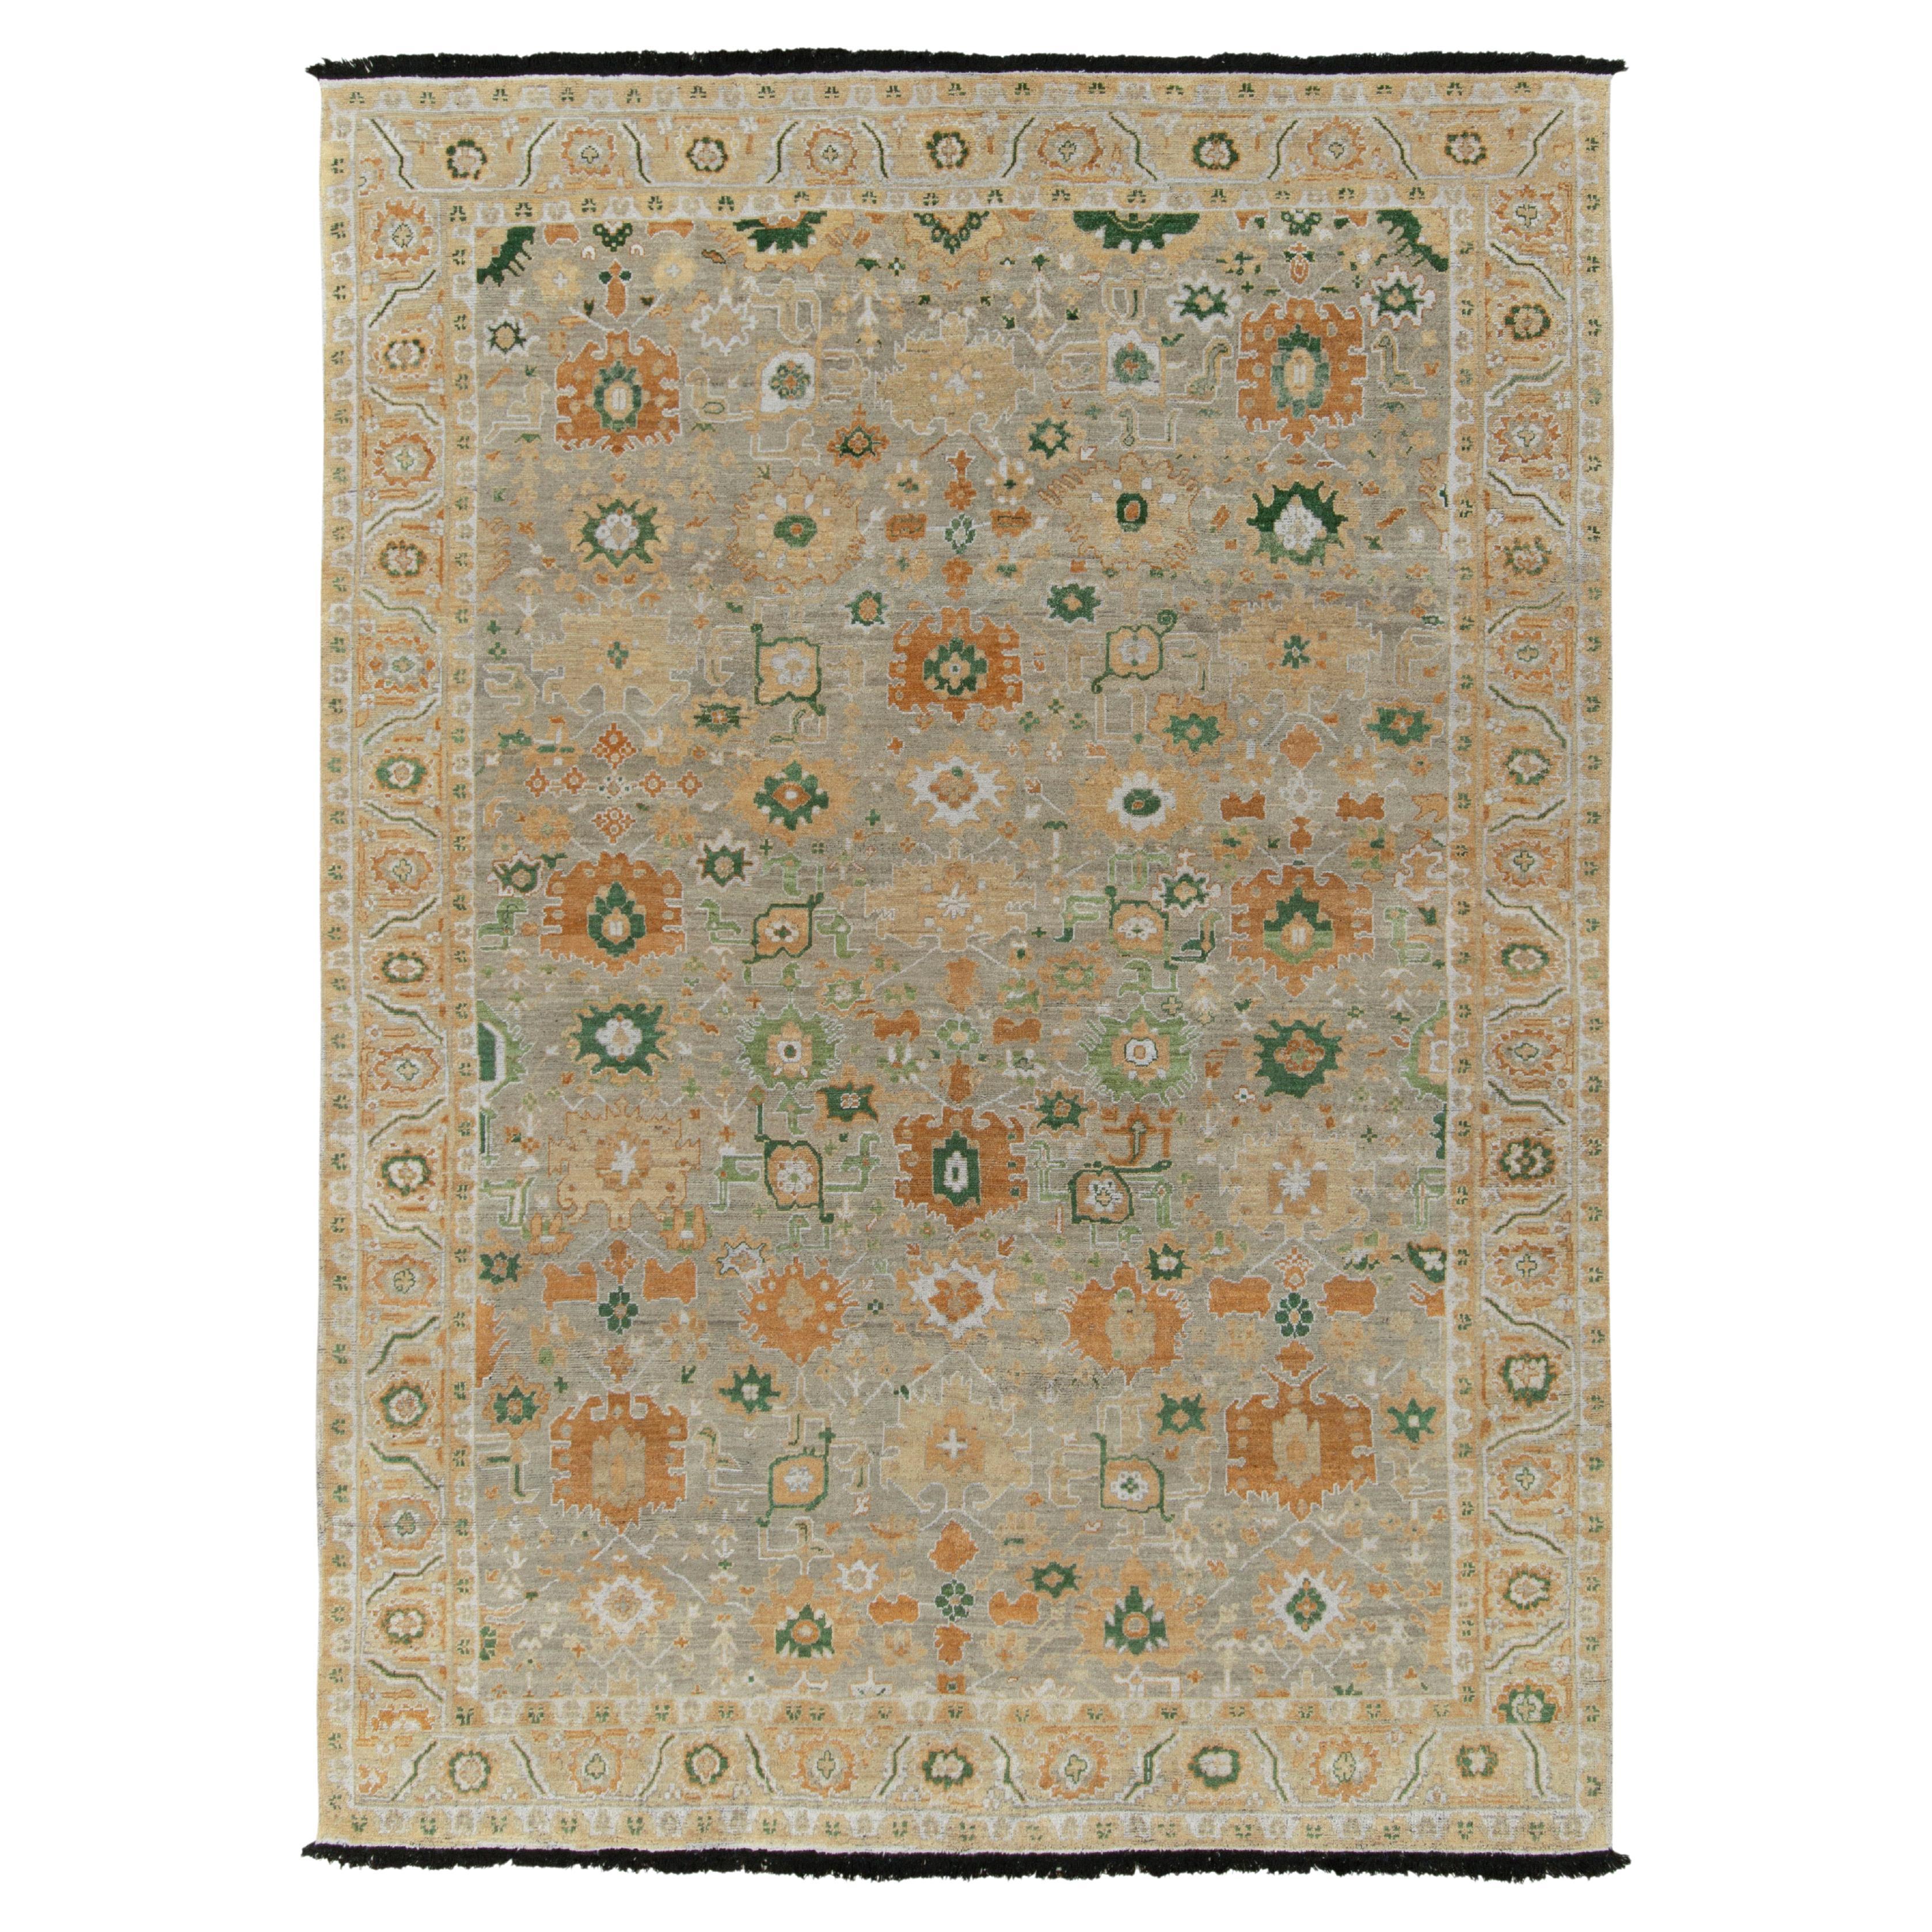 Antiker Teppich & Kelim-Teppich im Oushak-Stil mit grauem, grünem und goldenem Blumenmuster